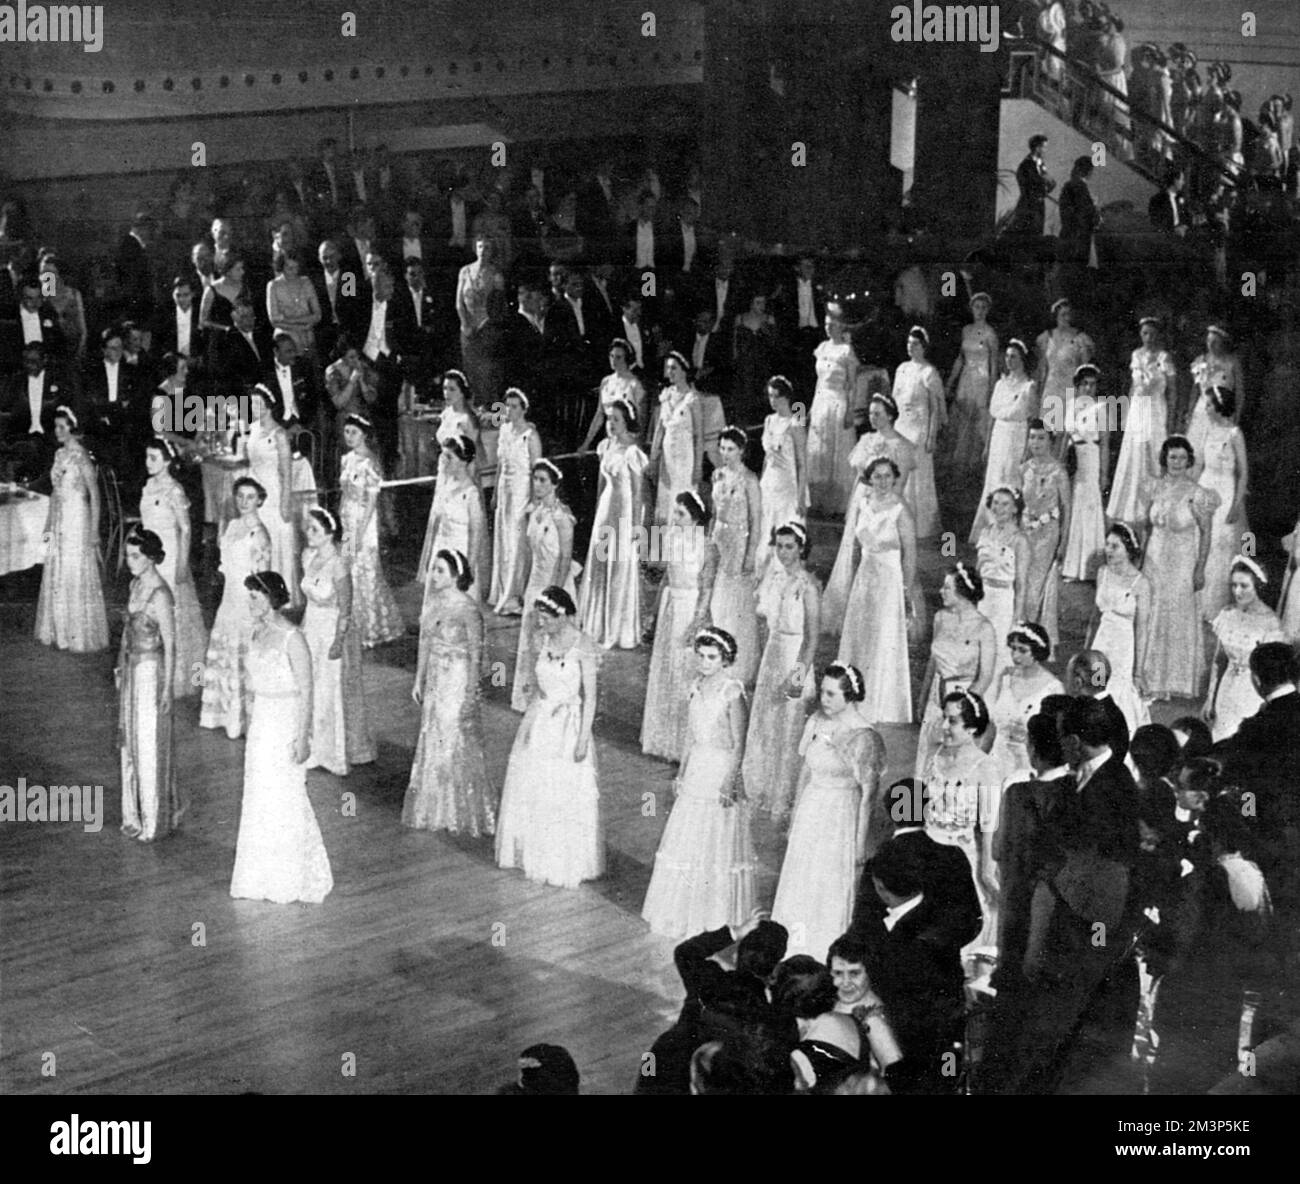 Glänzend in gezackten Reihen: Debütantinnen, die während Queen Charlotte's Ball auf dem Boden des Ballsaals vor dem traditionellen Schneiden des Kuchens, durchgeführt in diesem Jahr der Krönung von der Herzogin von Kent. Datum: 1937 Stockfoto